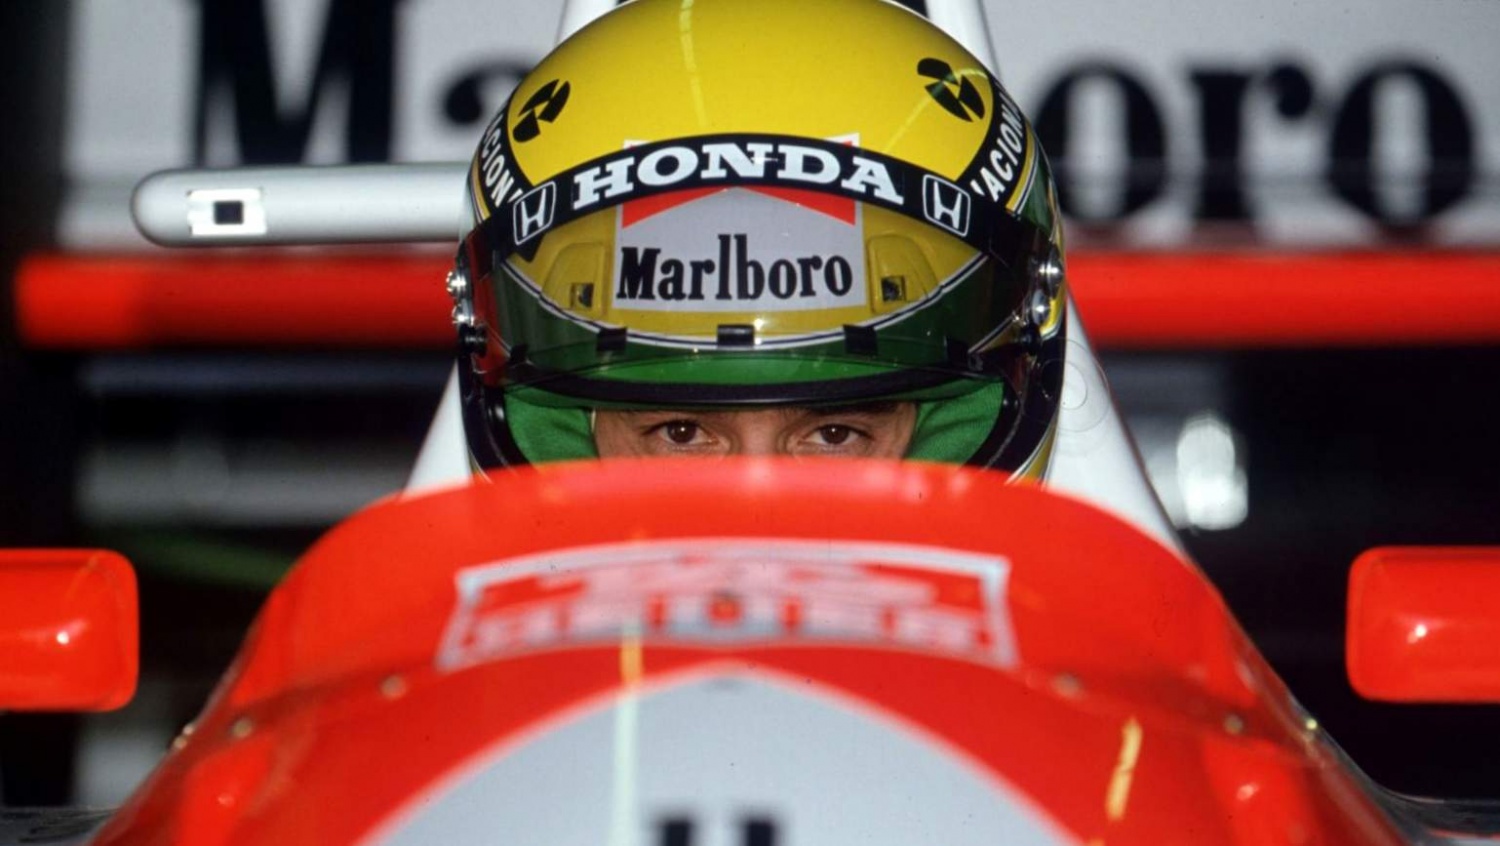 Ayrton Senna - A Driver’s Legacy